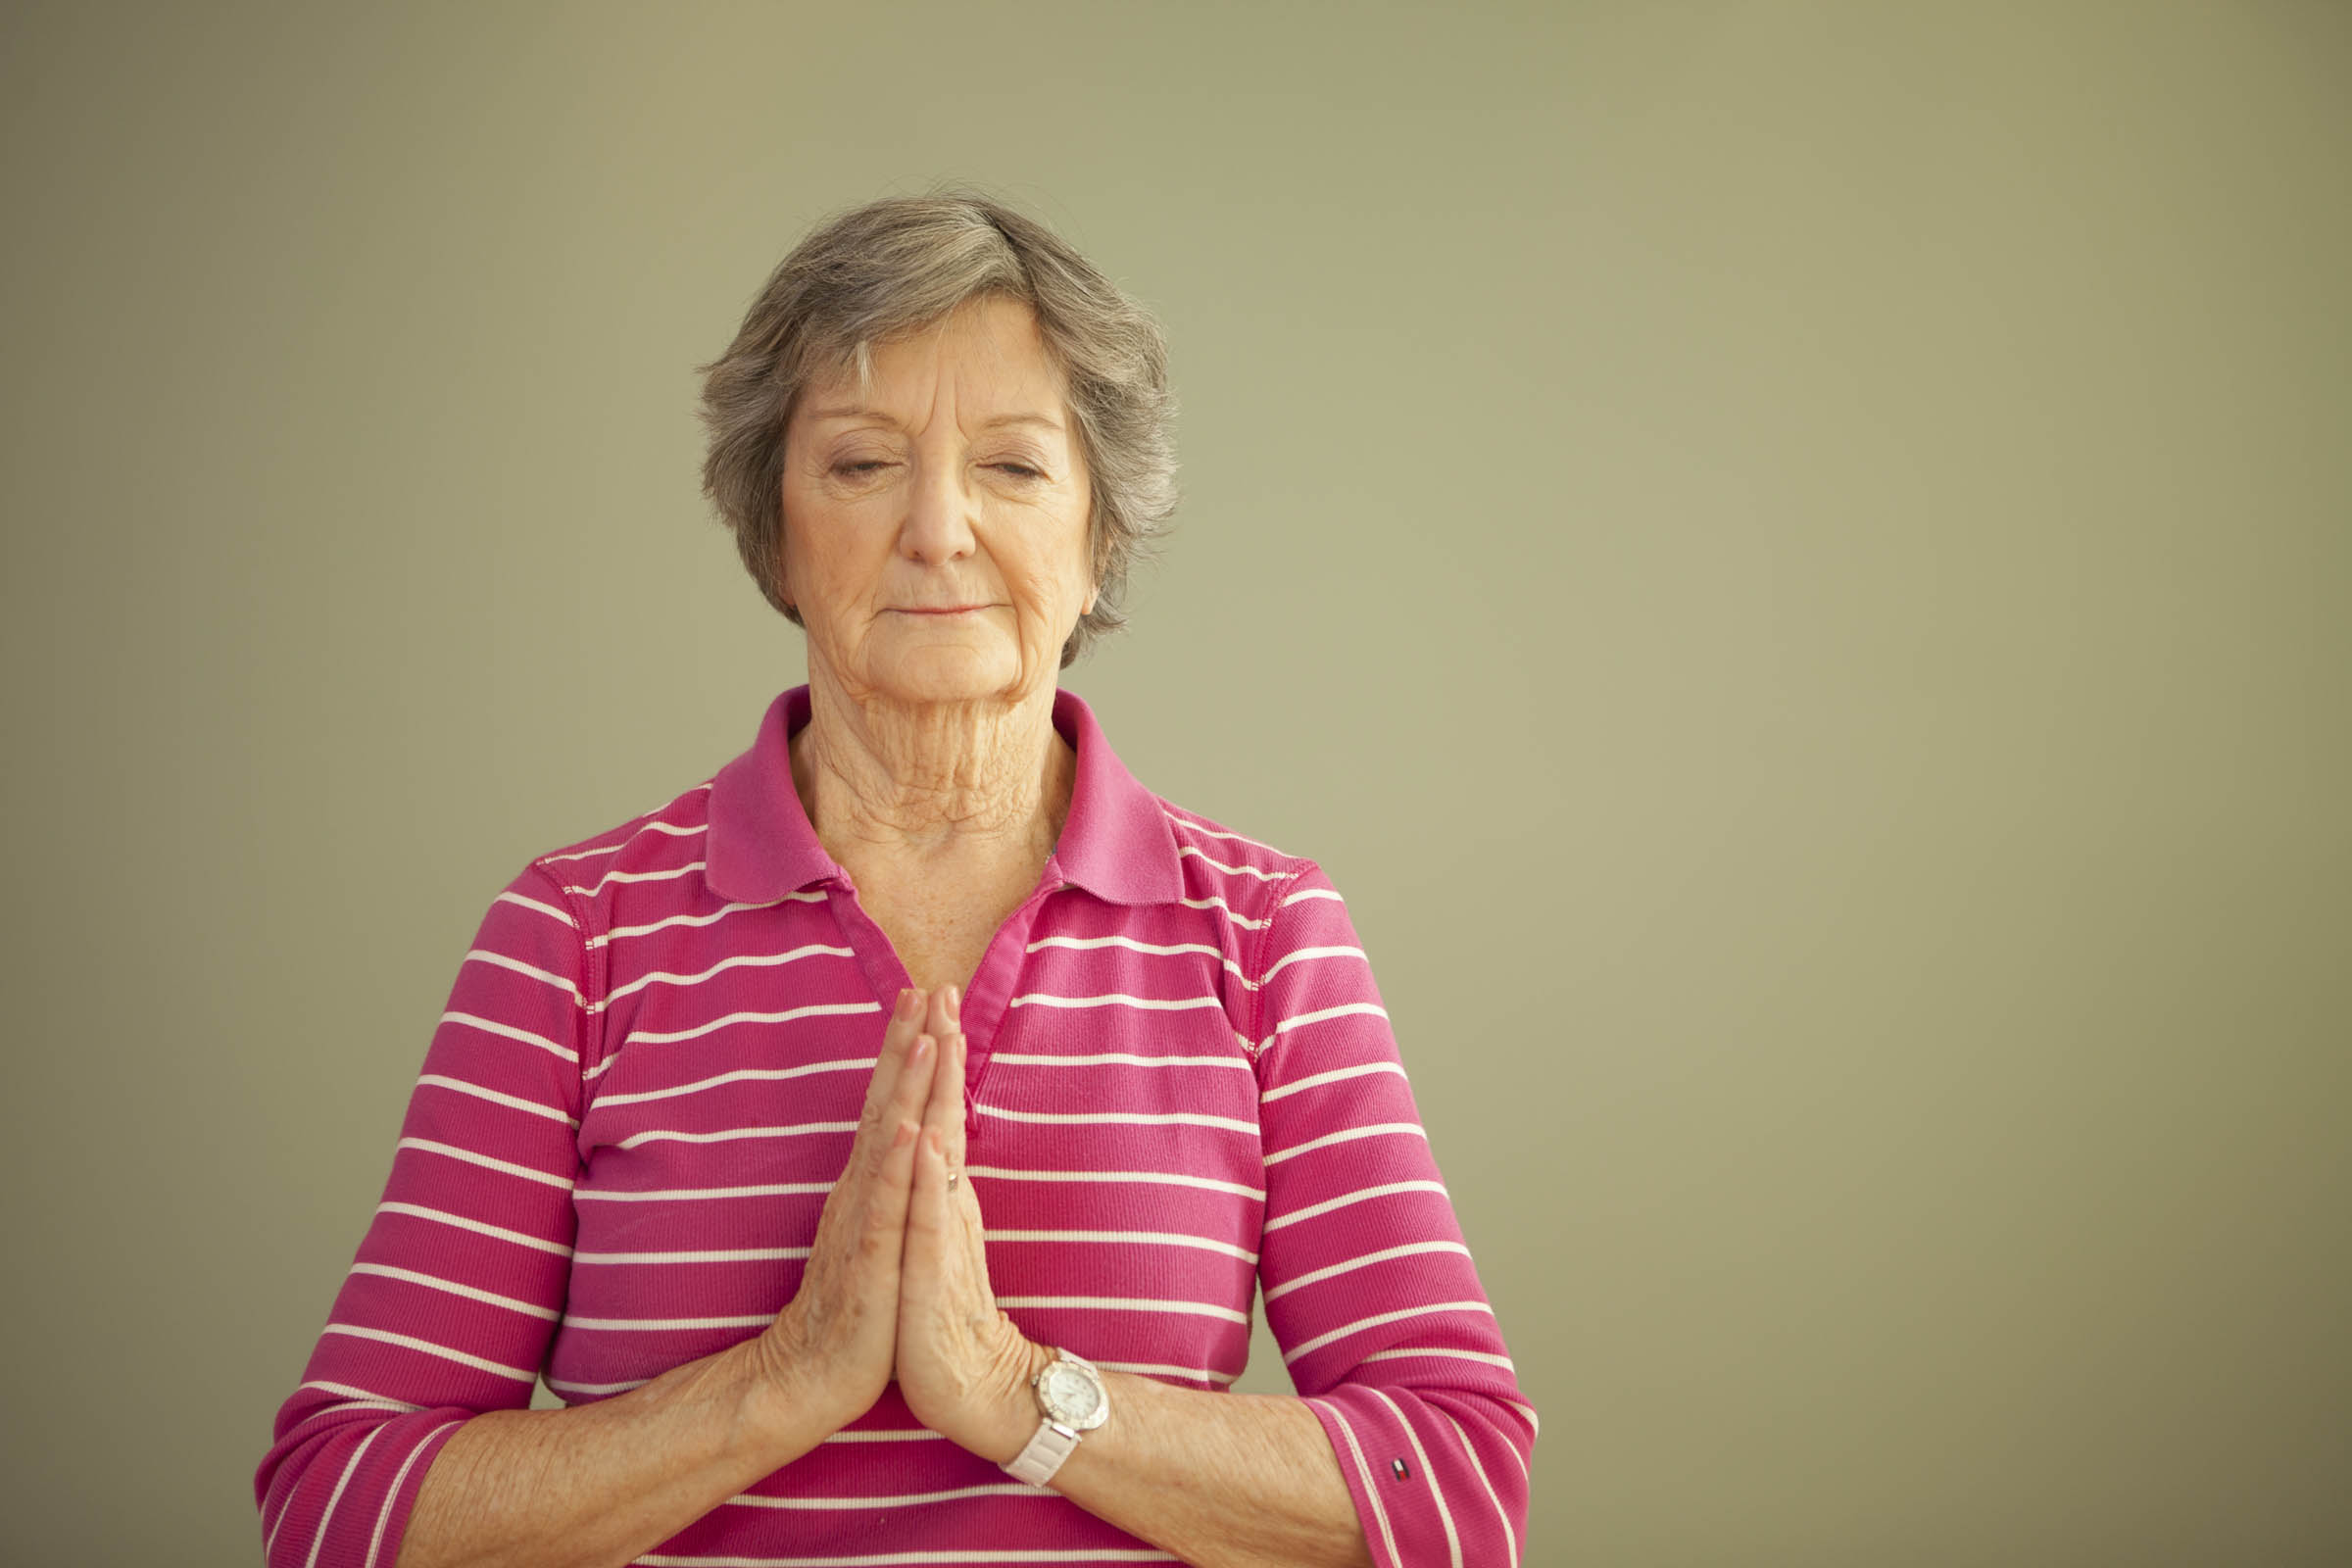 Senior woman meditating